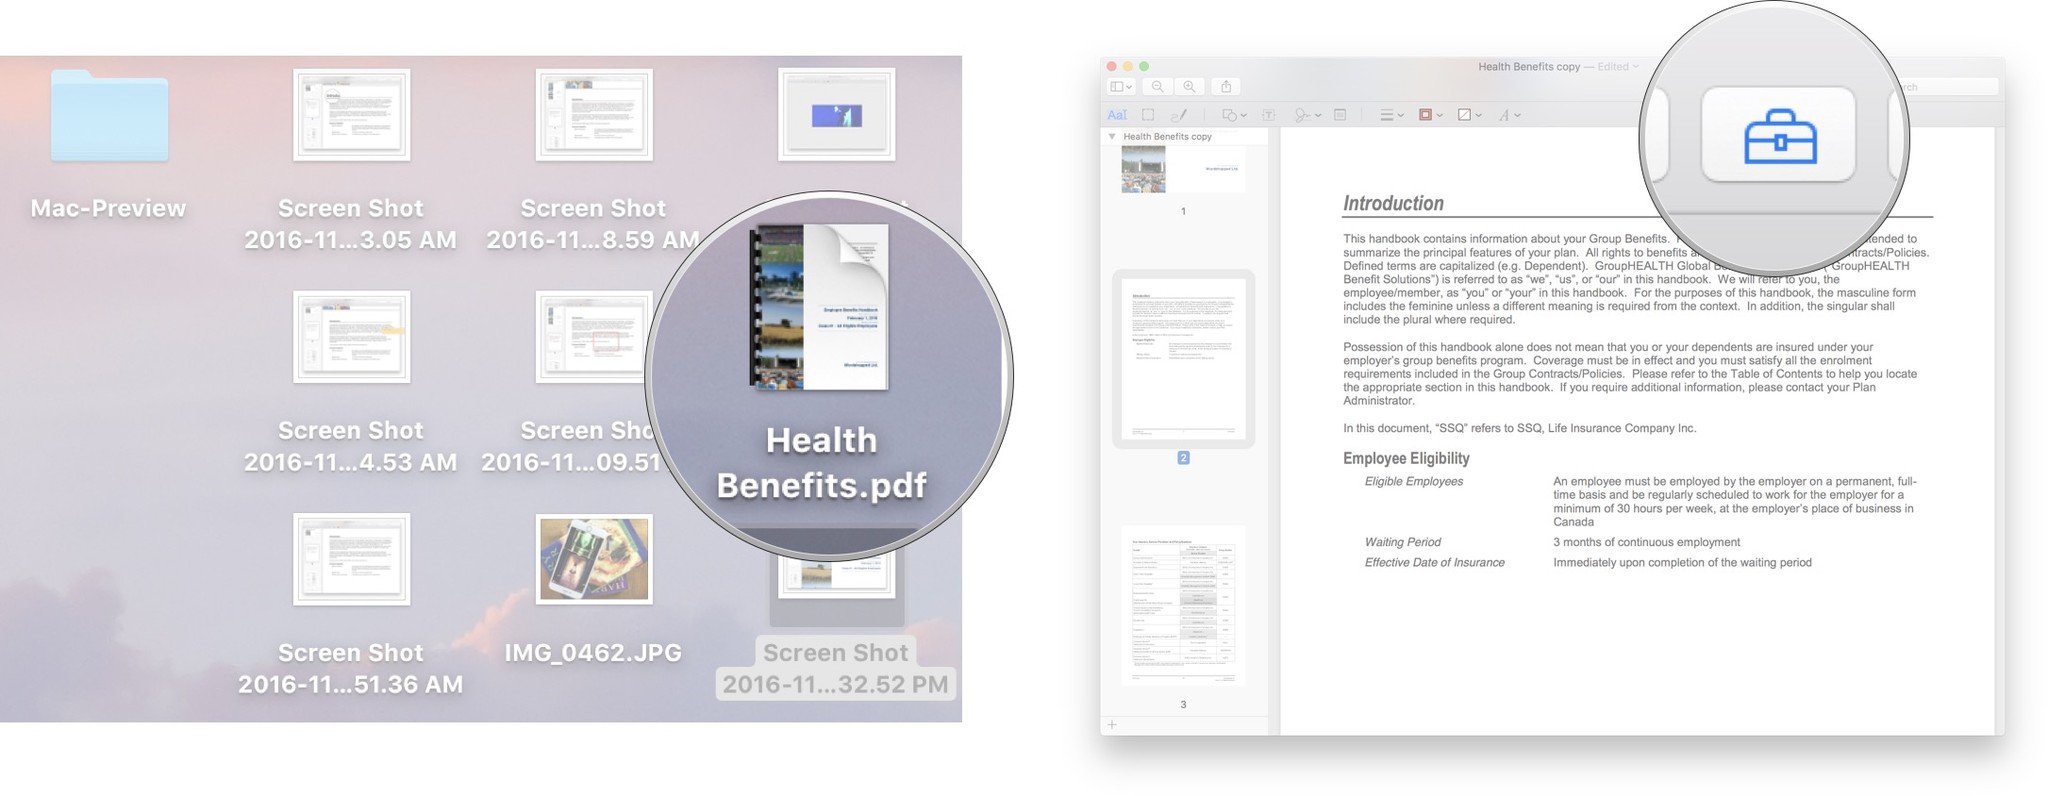 Mac preview user manual pdf